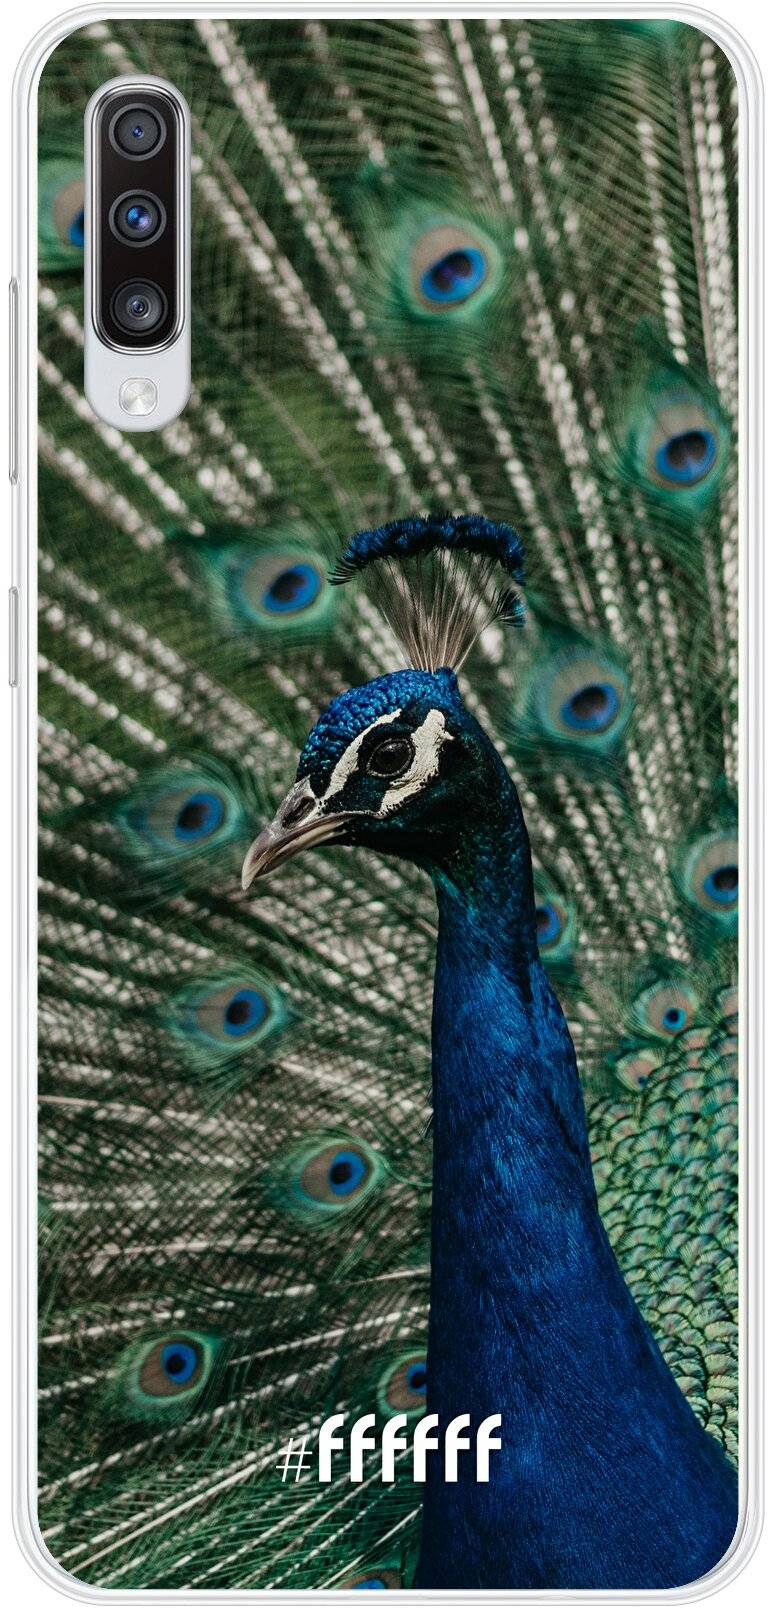 Peacock Galaxy A70